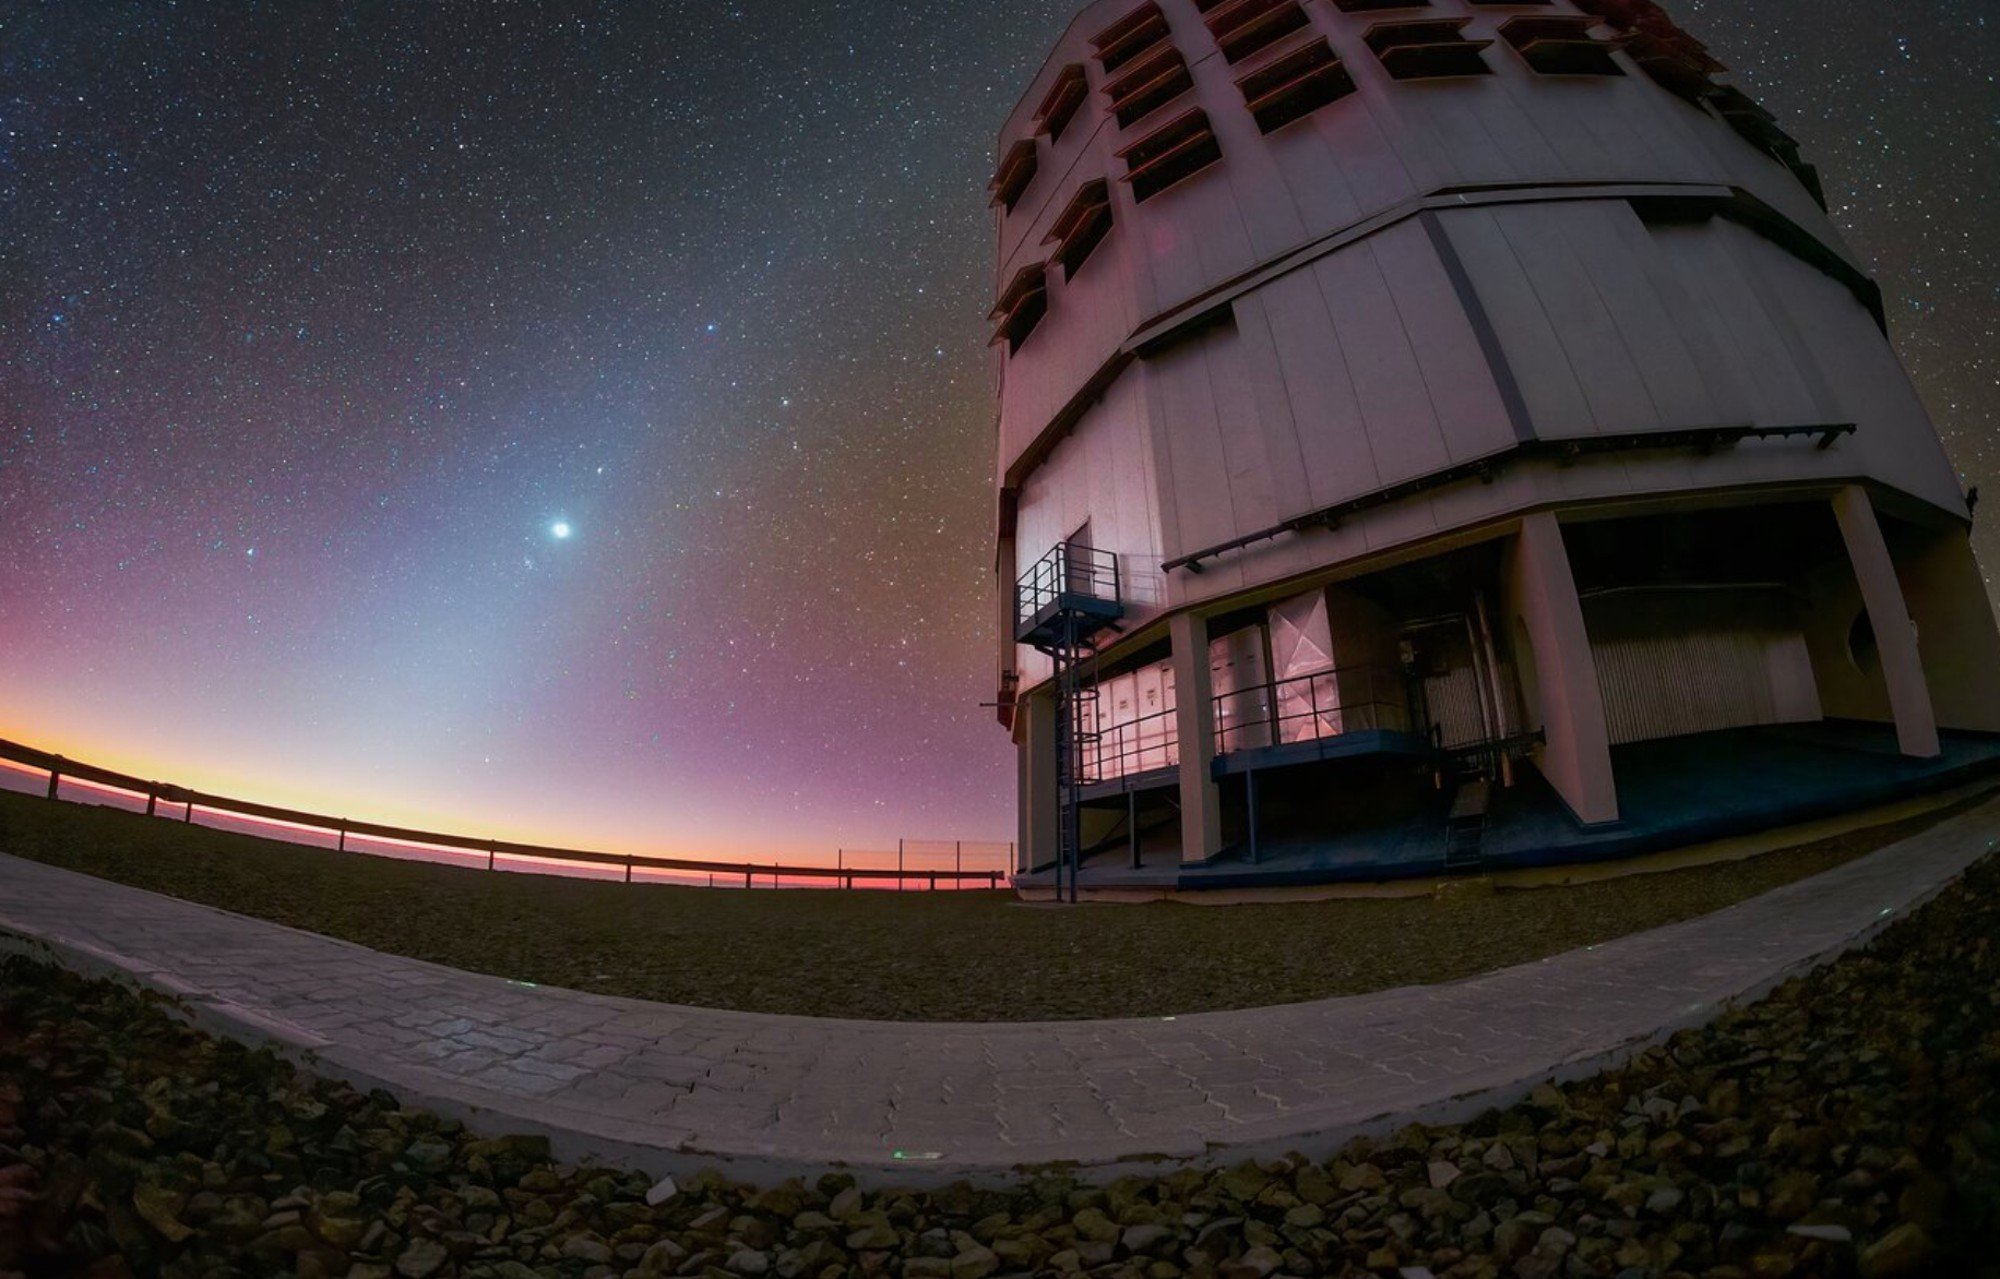 Luz zodiacal sinistra é capturada por telescópio no Chile – veja imagem